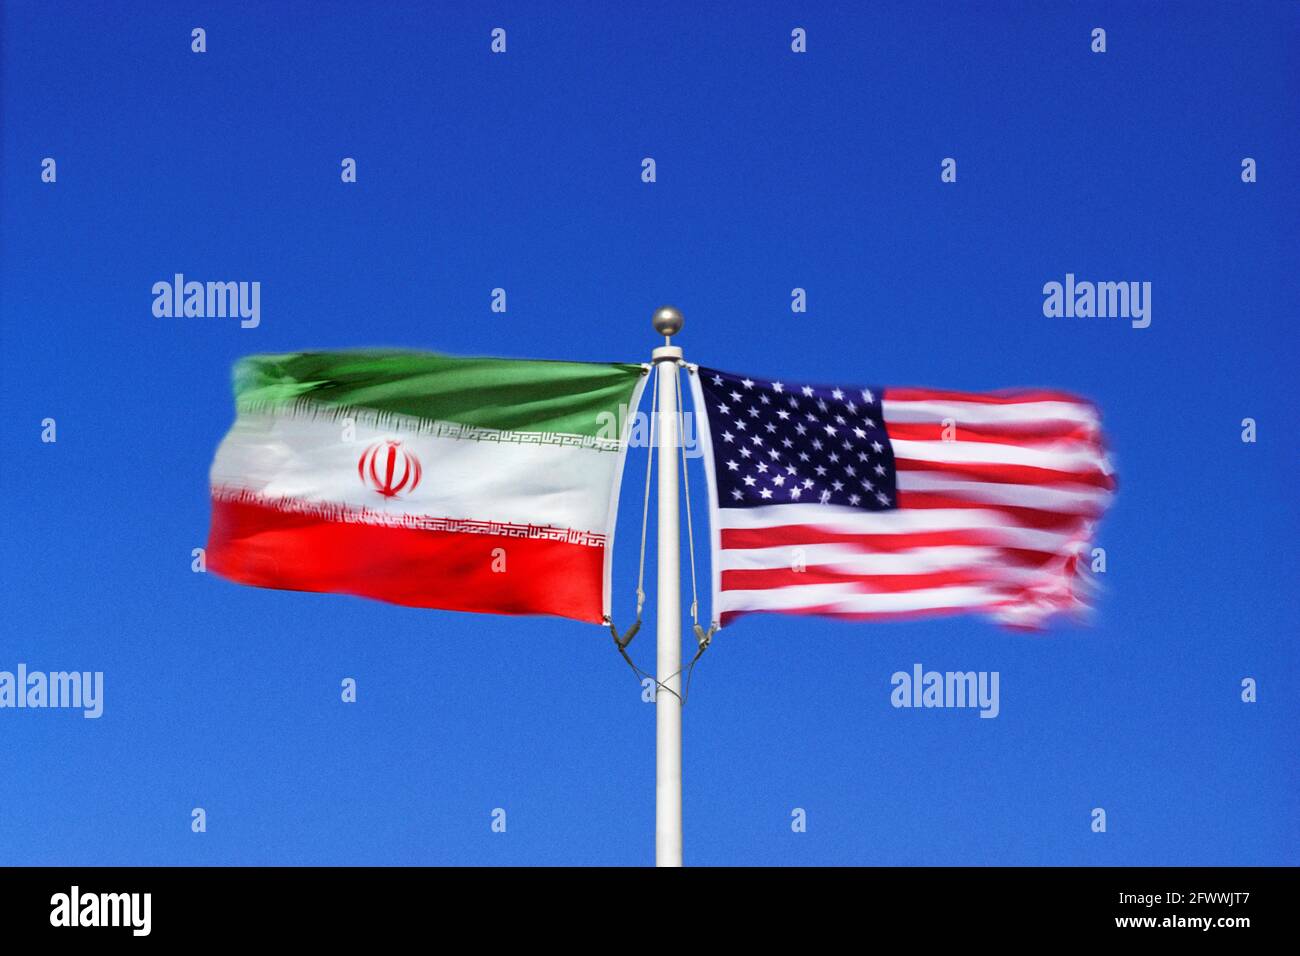 Iranische und amerikanische Flaggen schwenken Seite an Seite in gegenläufigen Winden auf einem einzigen Fahnenmast. Digitales Composite. Stockfoto